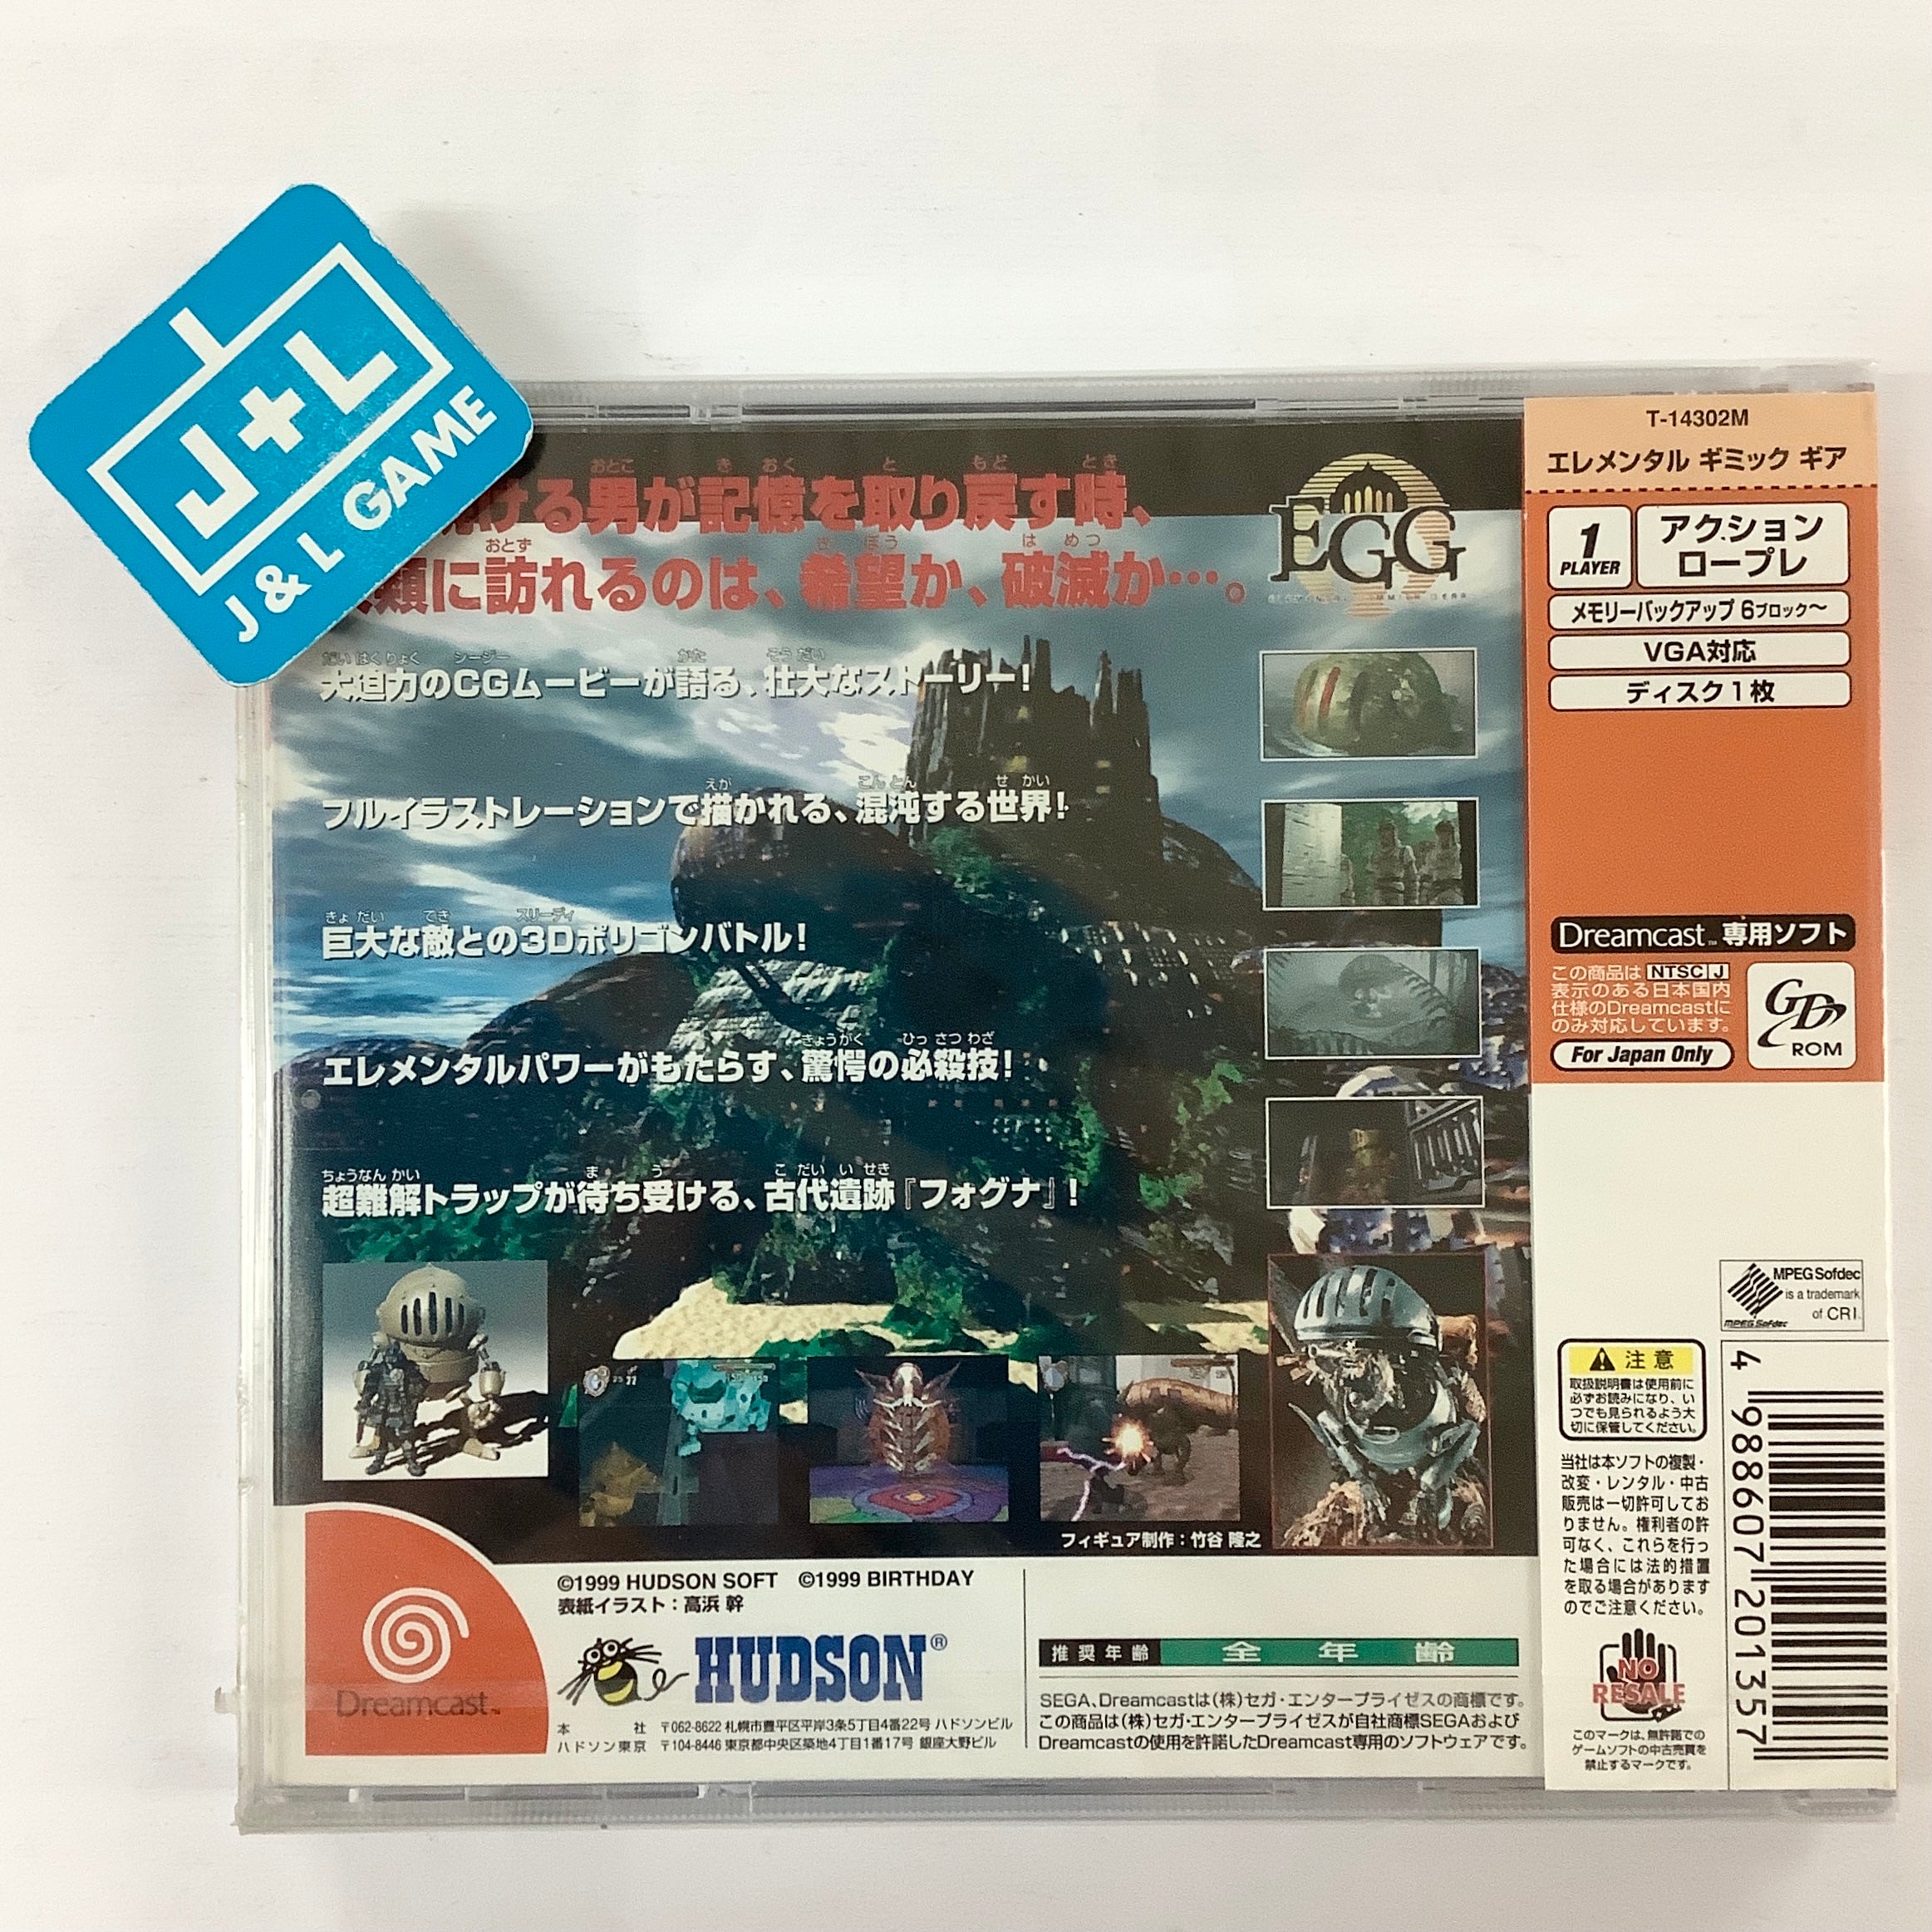 Elemental Gimmick Gear - (DC) SEGA Dreamcast (Japanese Import) Video Games Hudson   